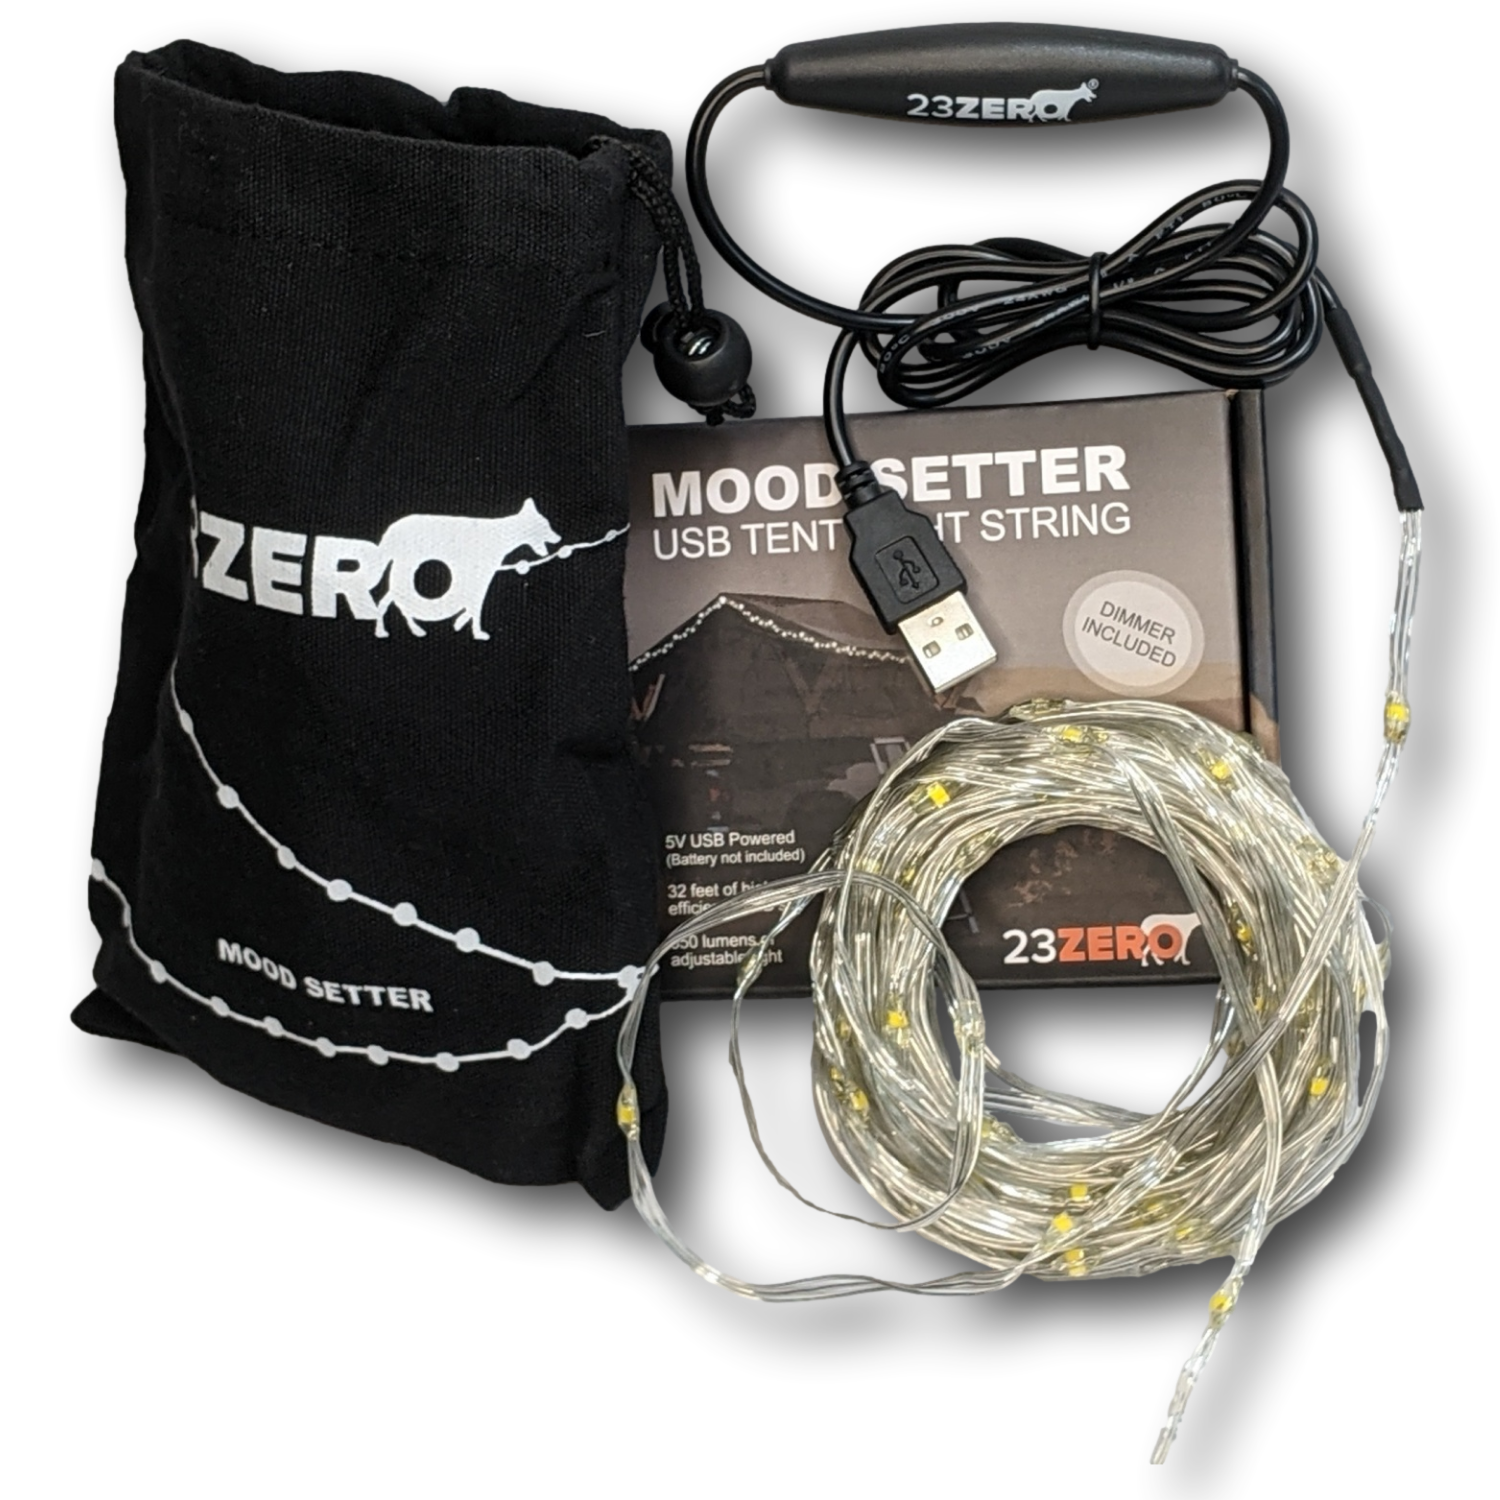 23Zero Mood Setter USB LED Tent Light